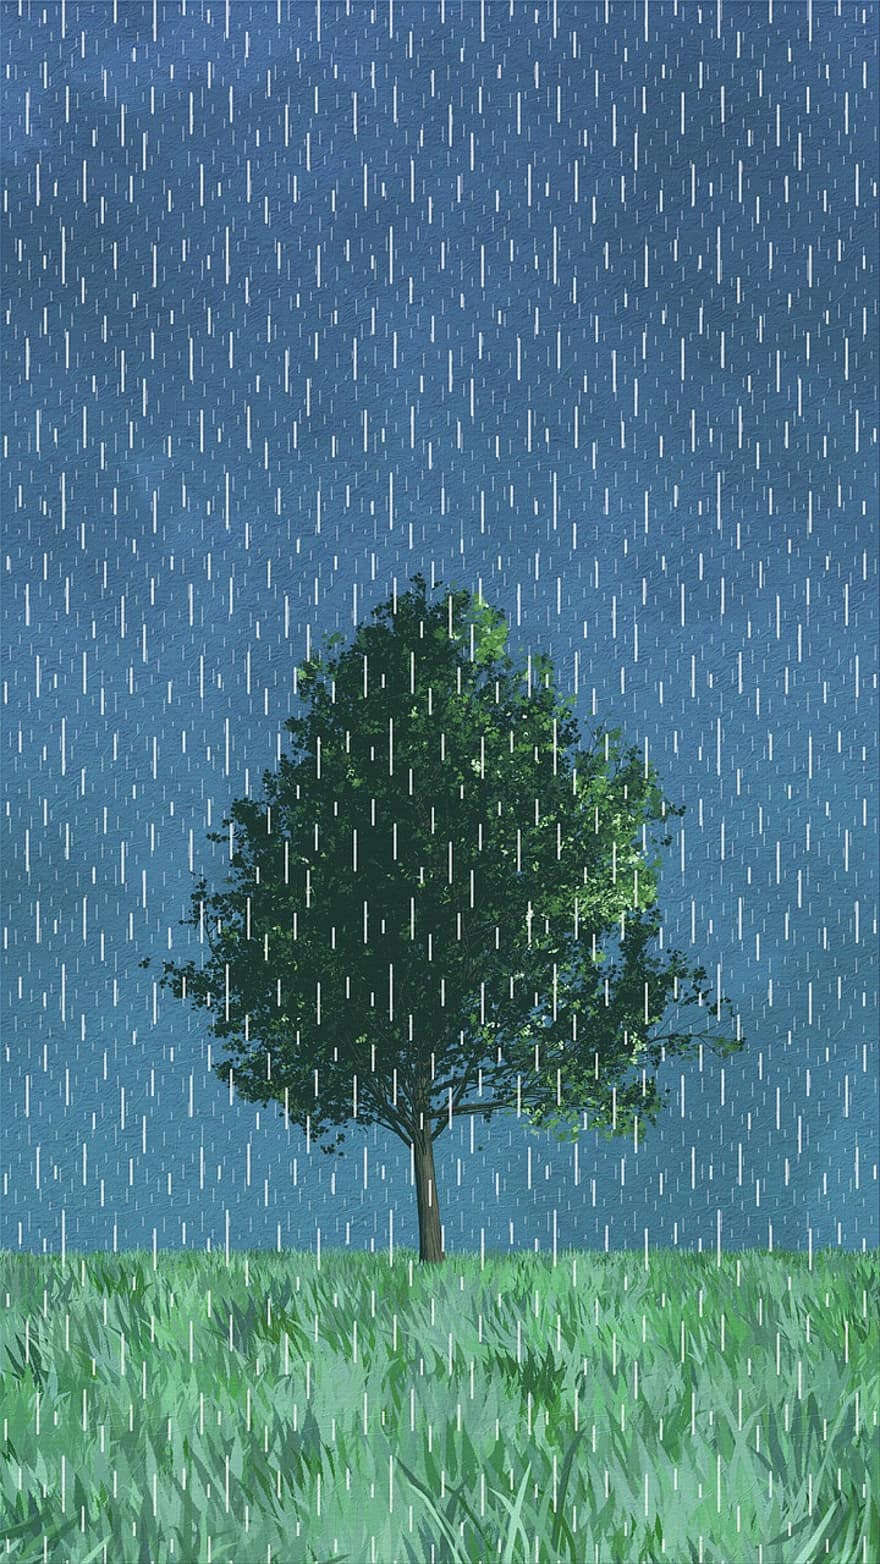 obraz, kreatywność, łąka, drzewo, deszcz, niebieski deszcz, niebieski obraz, niebieska farba